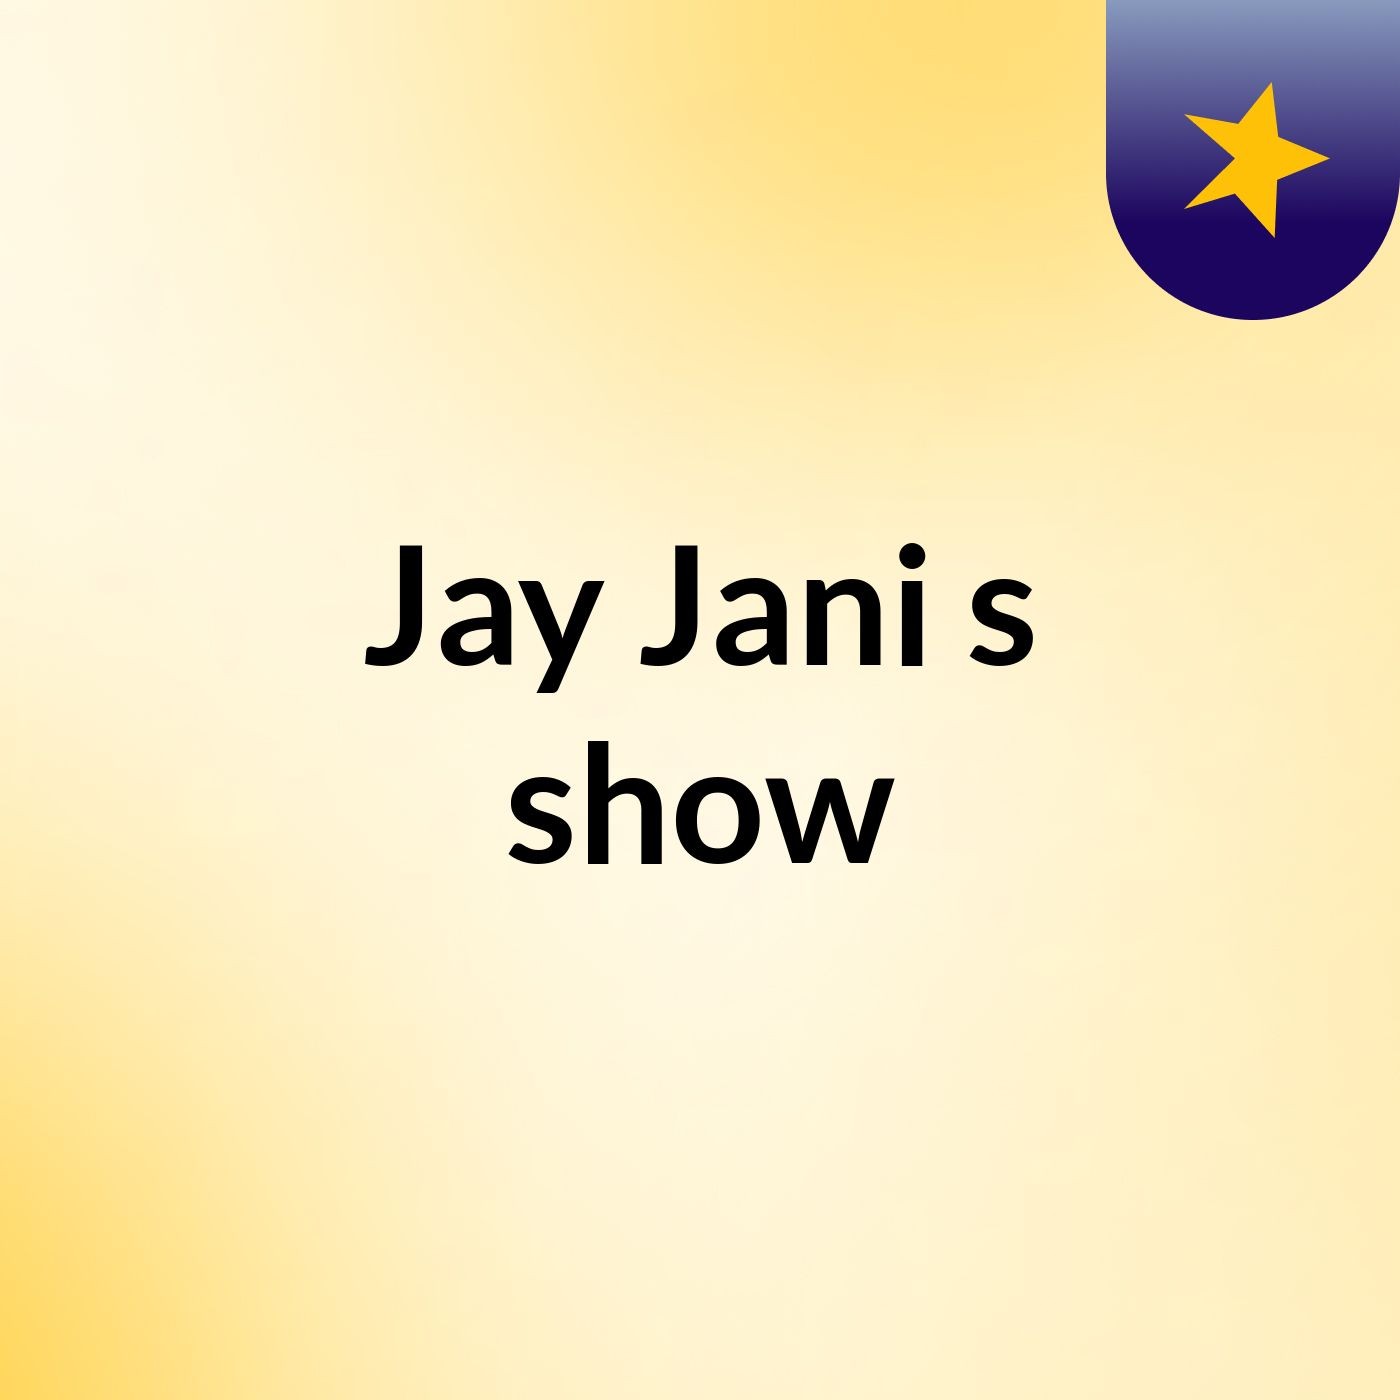 Jay Jani's show